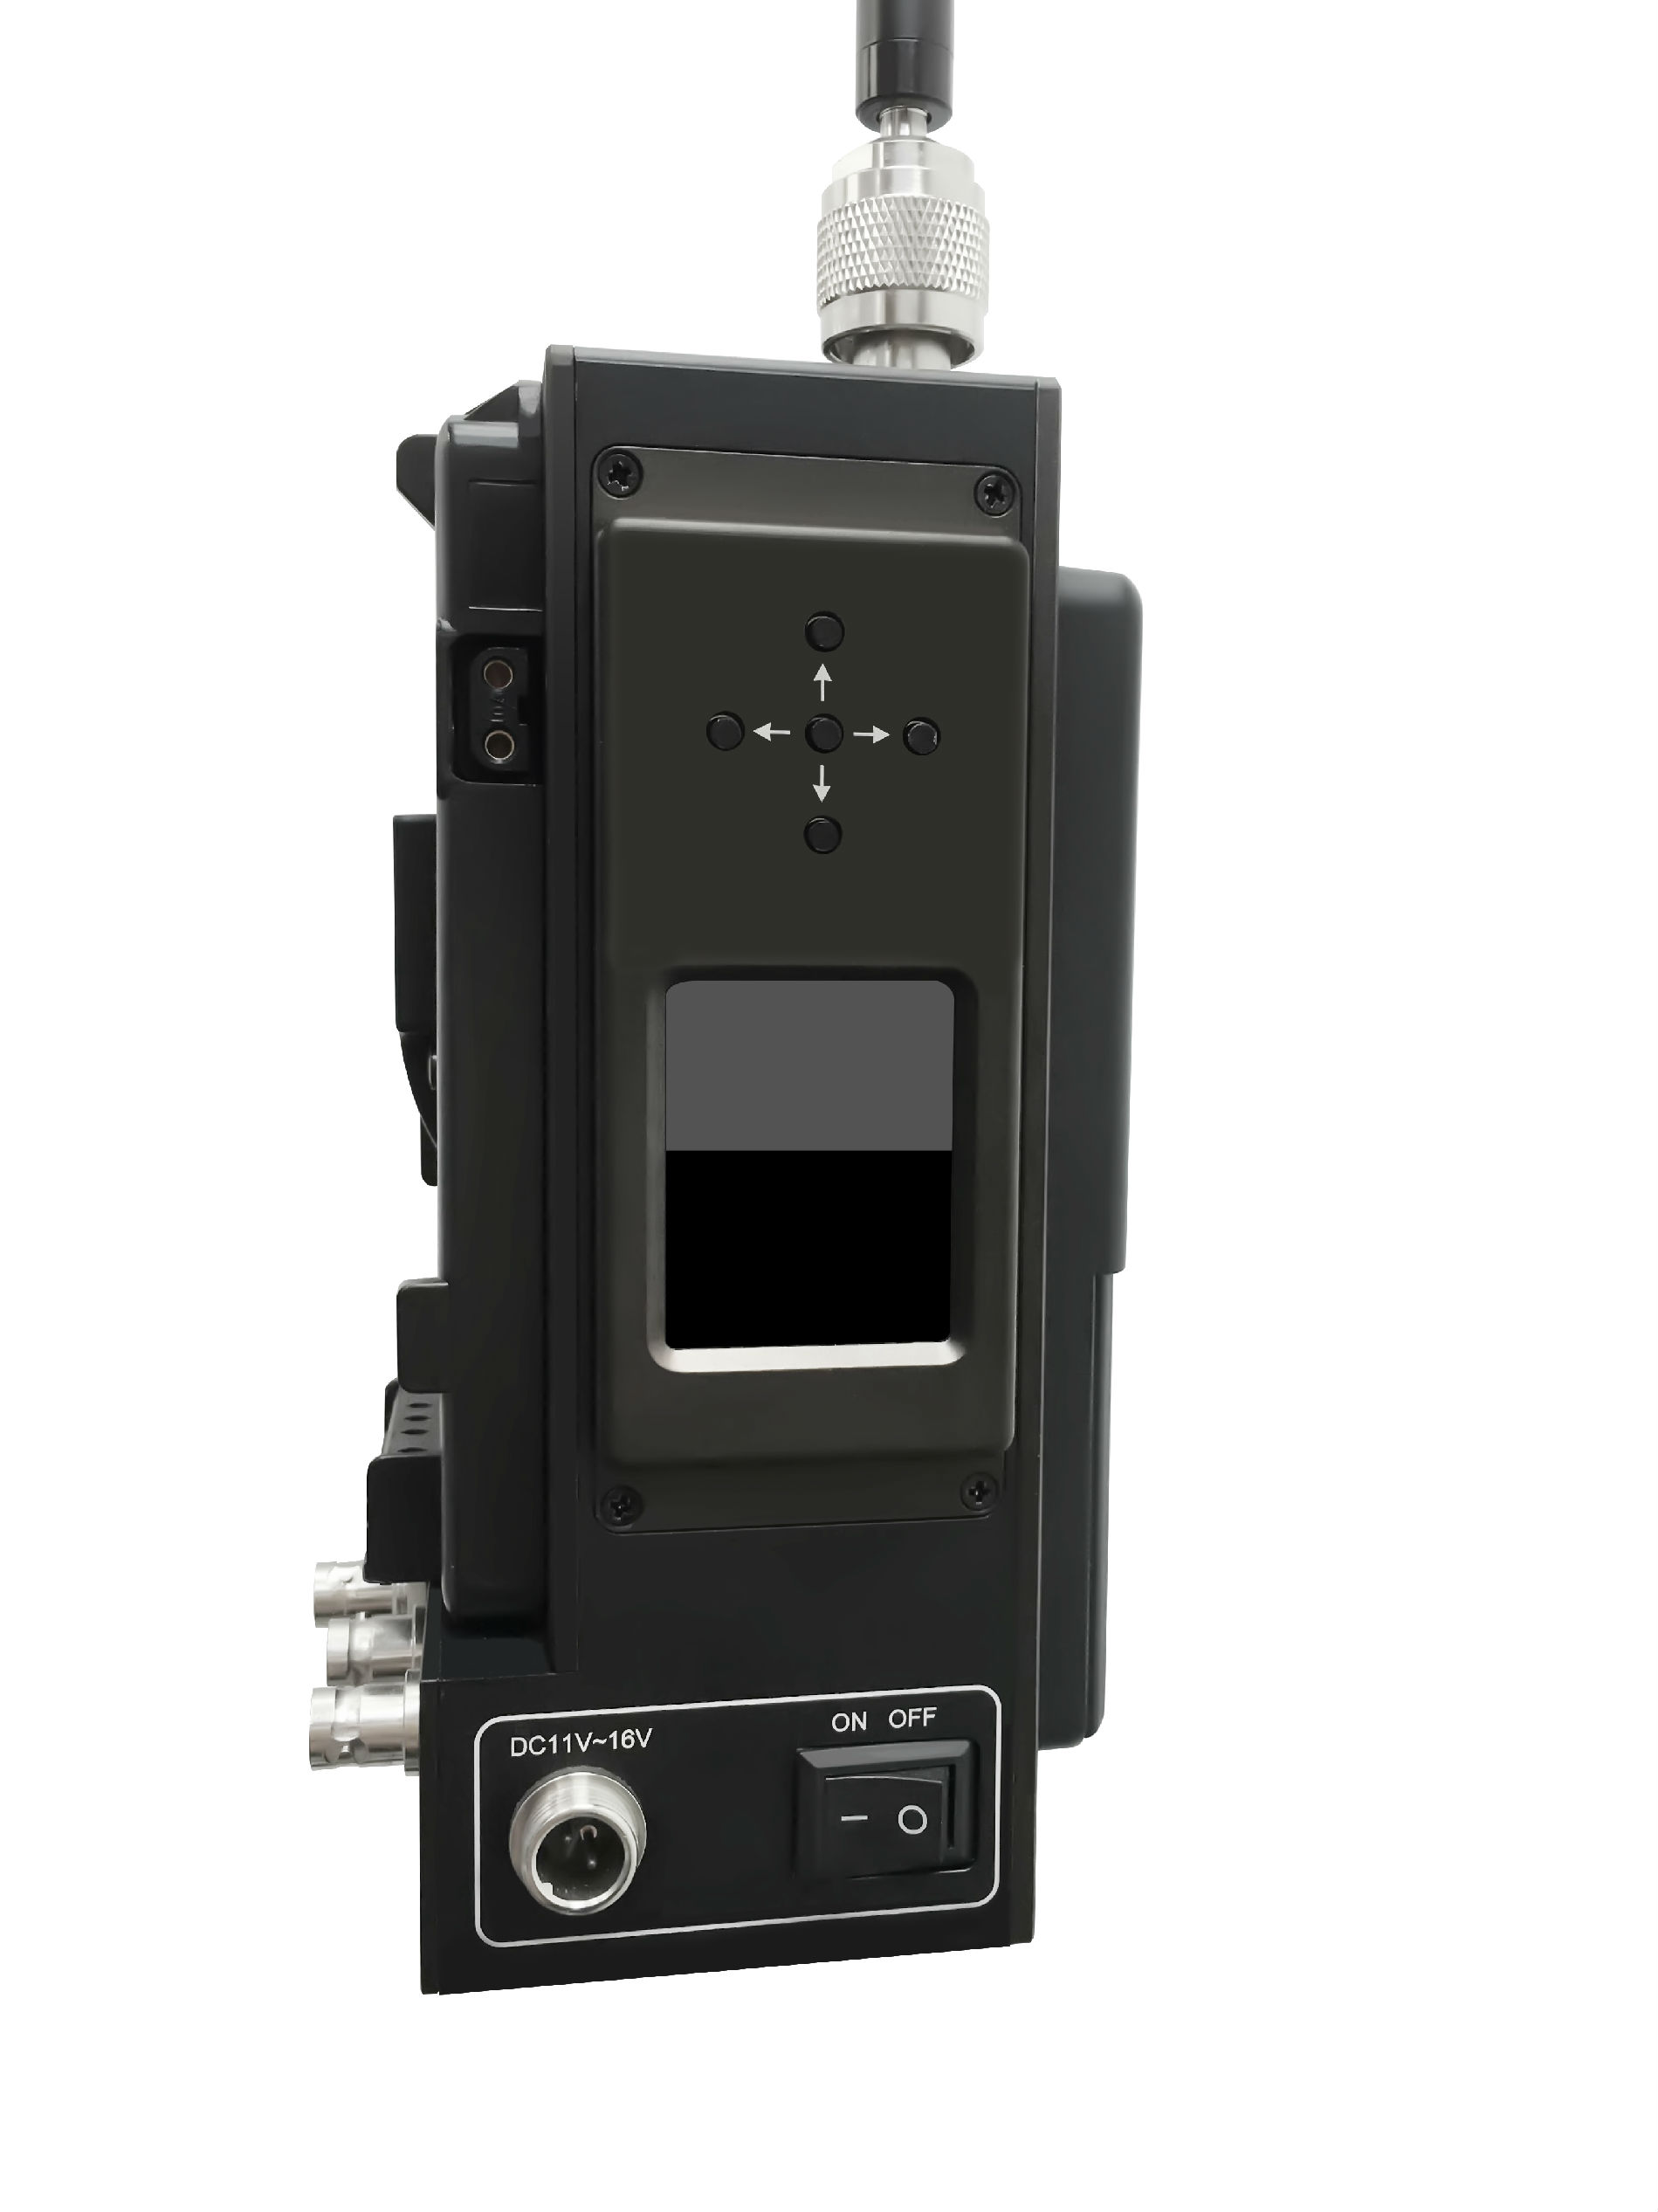 广电级扣板式视频无线传输无线微波视频传输系统 小体积远距离视频传输发射机 SDI视频图像传输设备 高清视频传输发射机 无线图像传输设备 SG-HD105